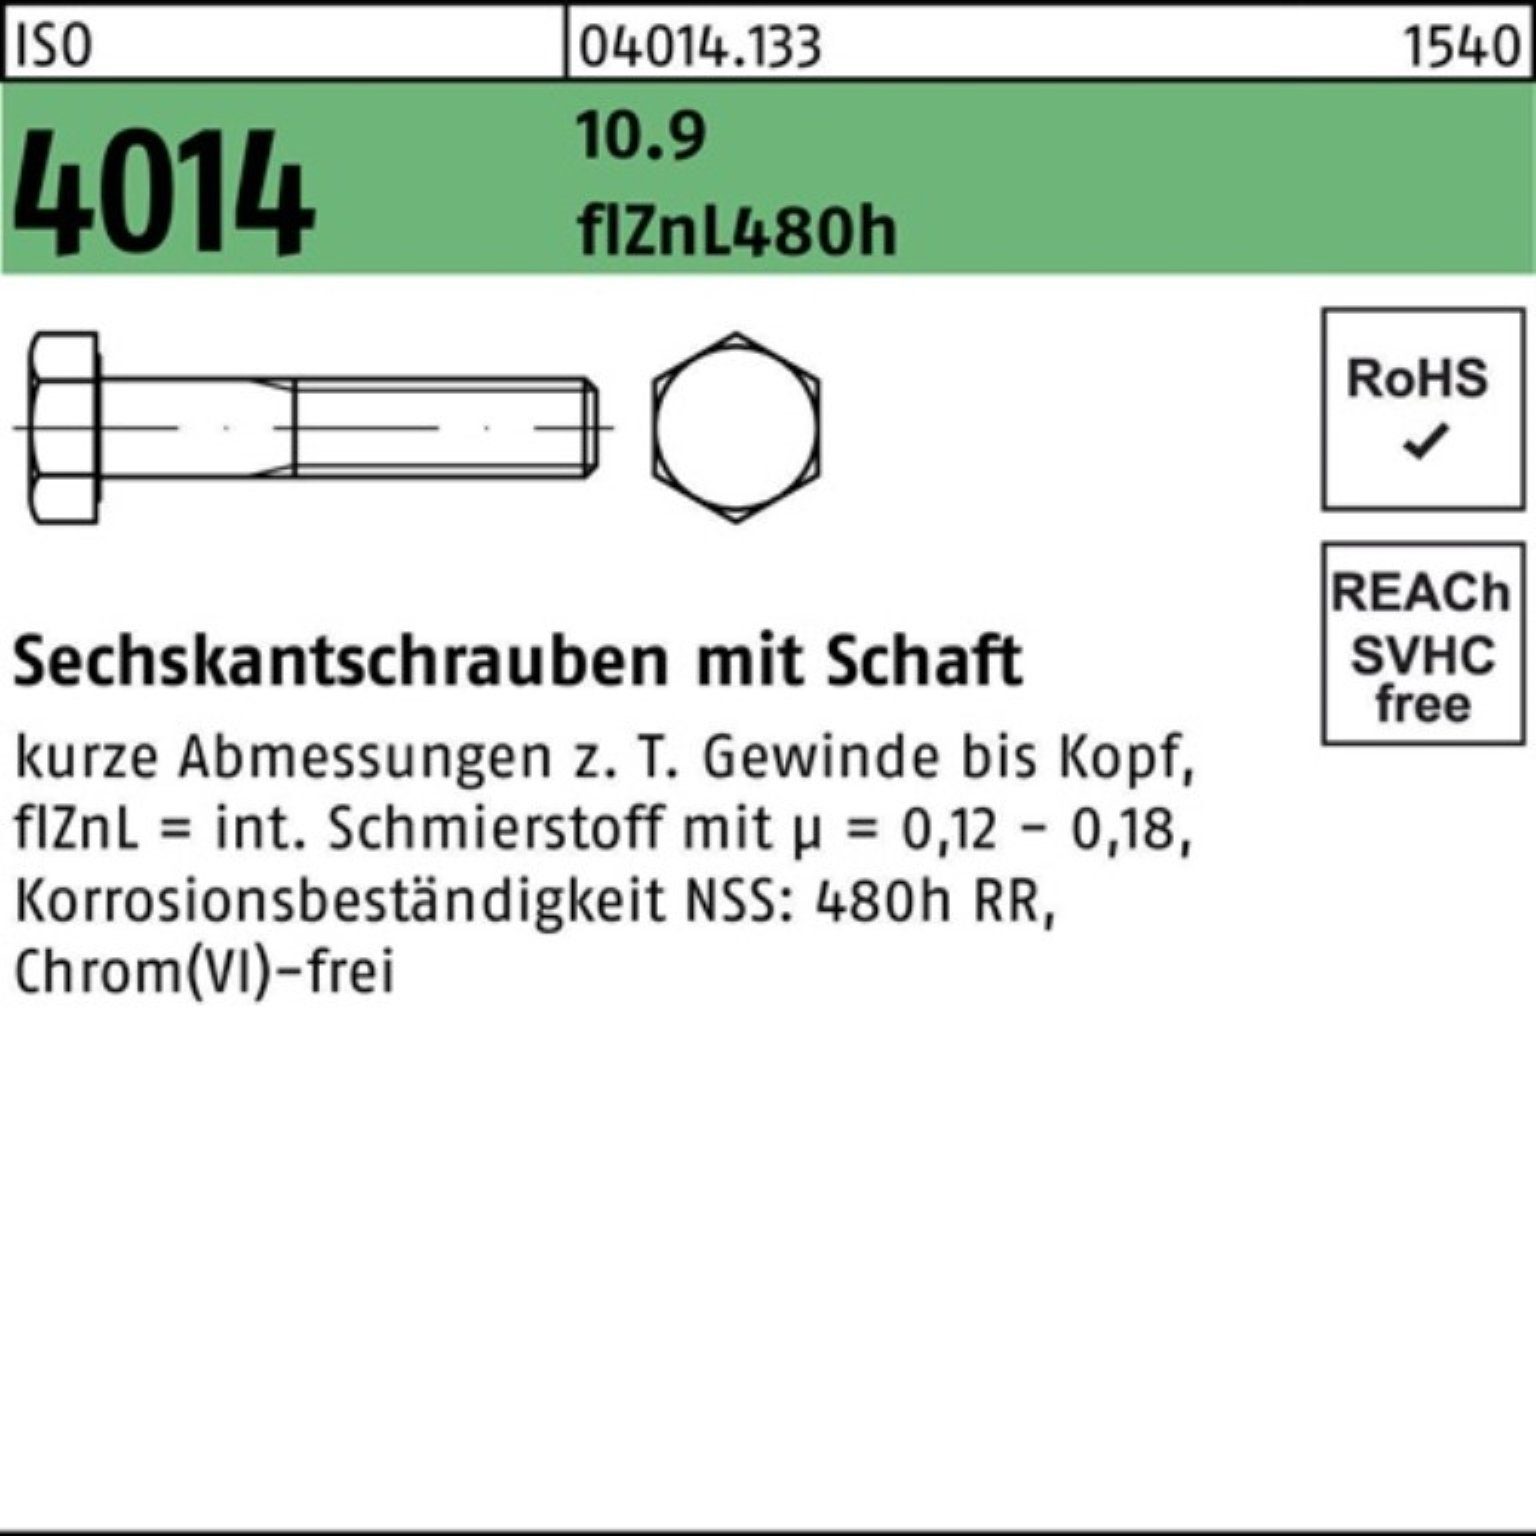 Bufab Sechskantschraube 100er Pack Schaft zinklamelle 10.9 110 Sechskantschraube ISO M22x 4014